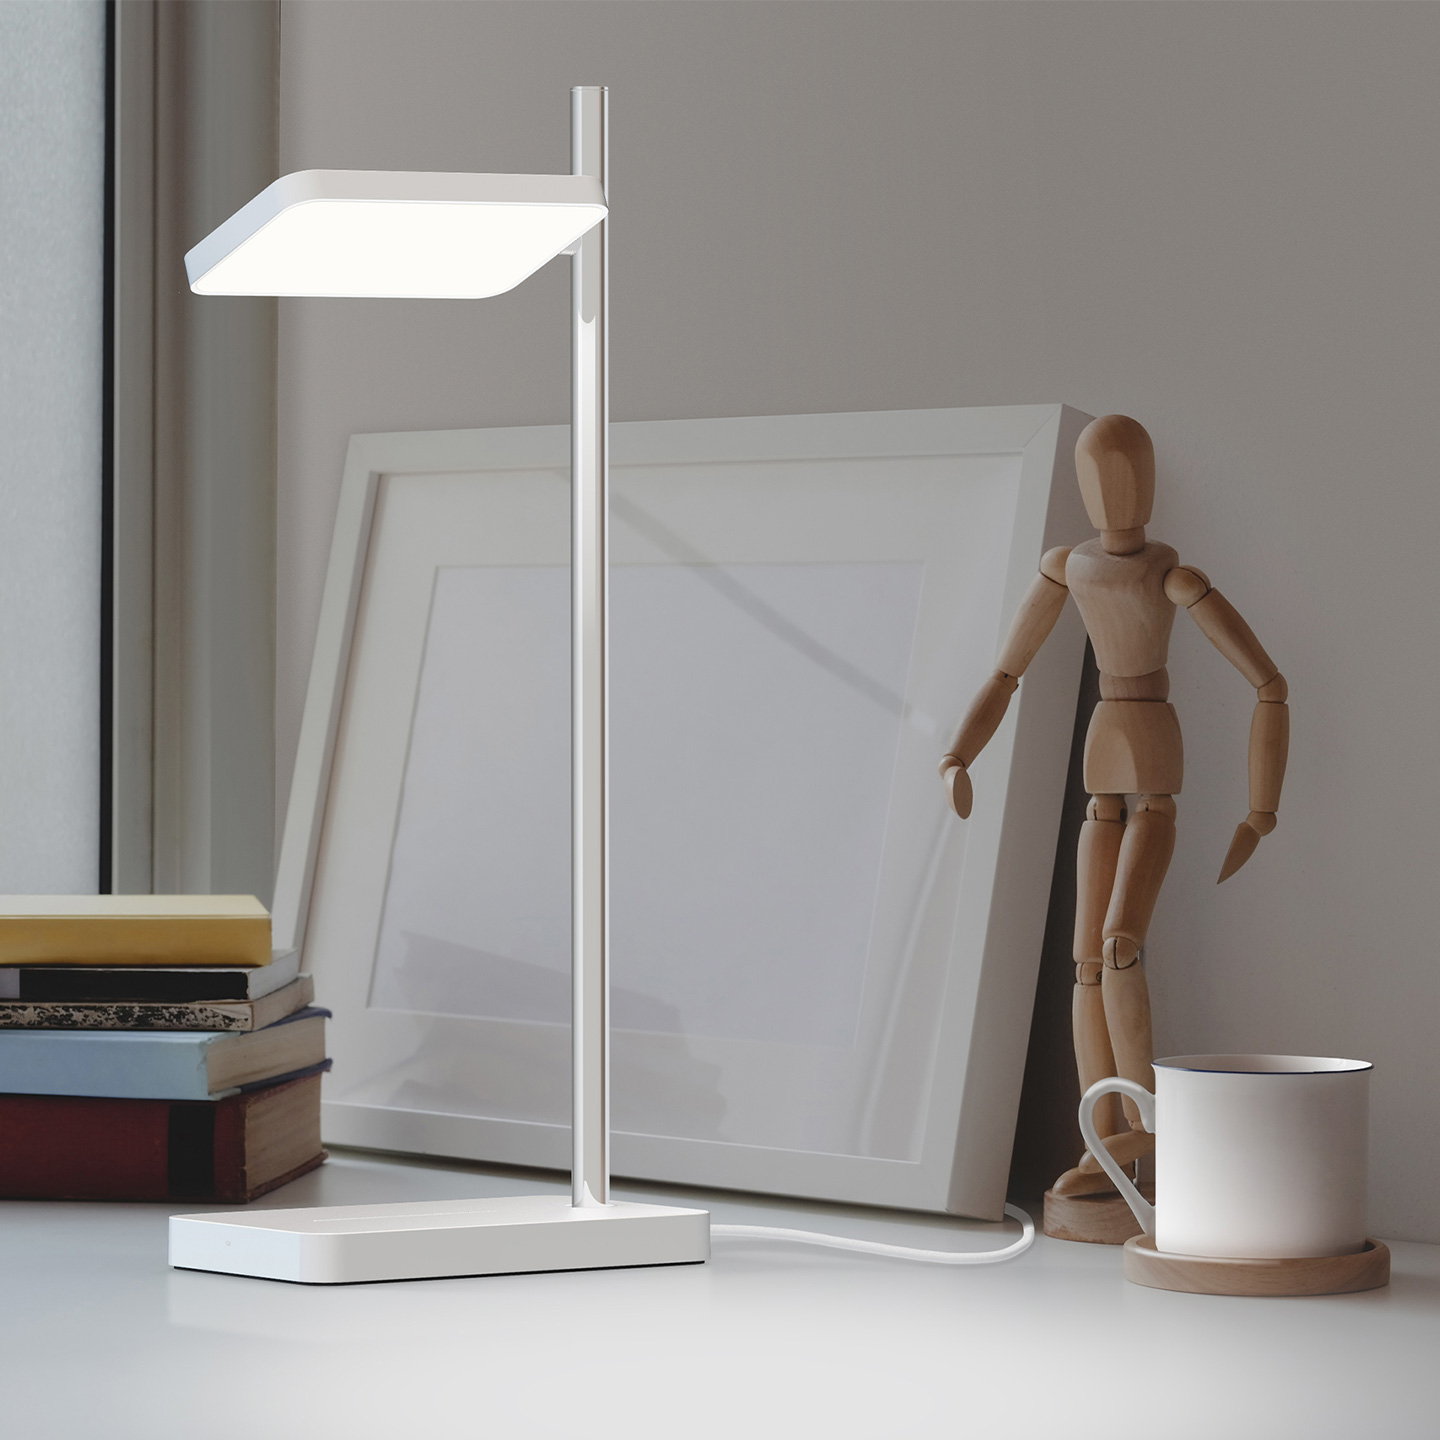 Taliaは、照明としての機能を果たすために必要な要素だけを備えた、洗練されたコンパクトなデザインのランプです。